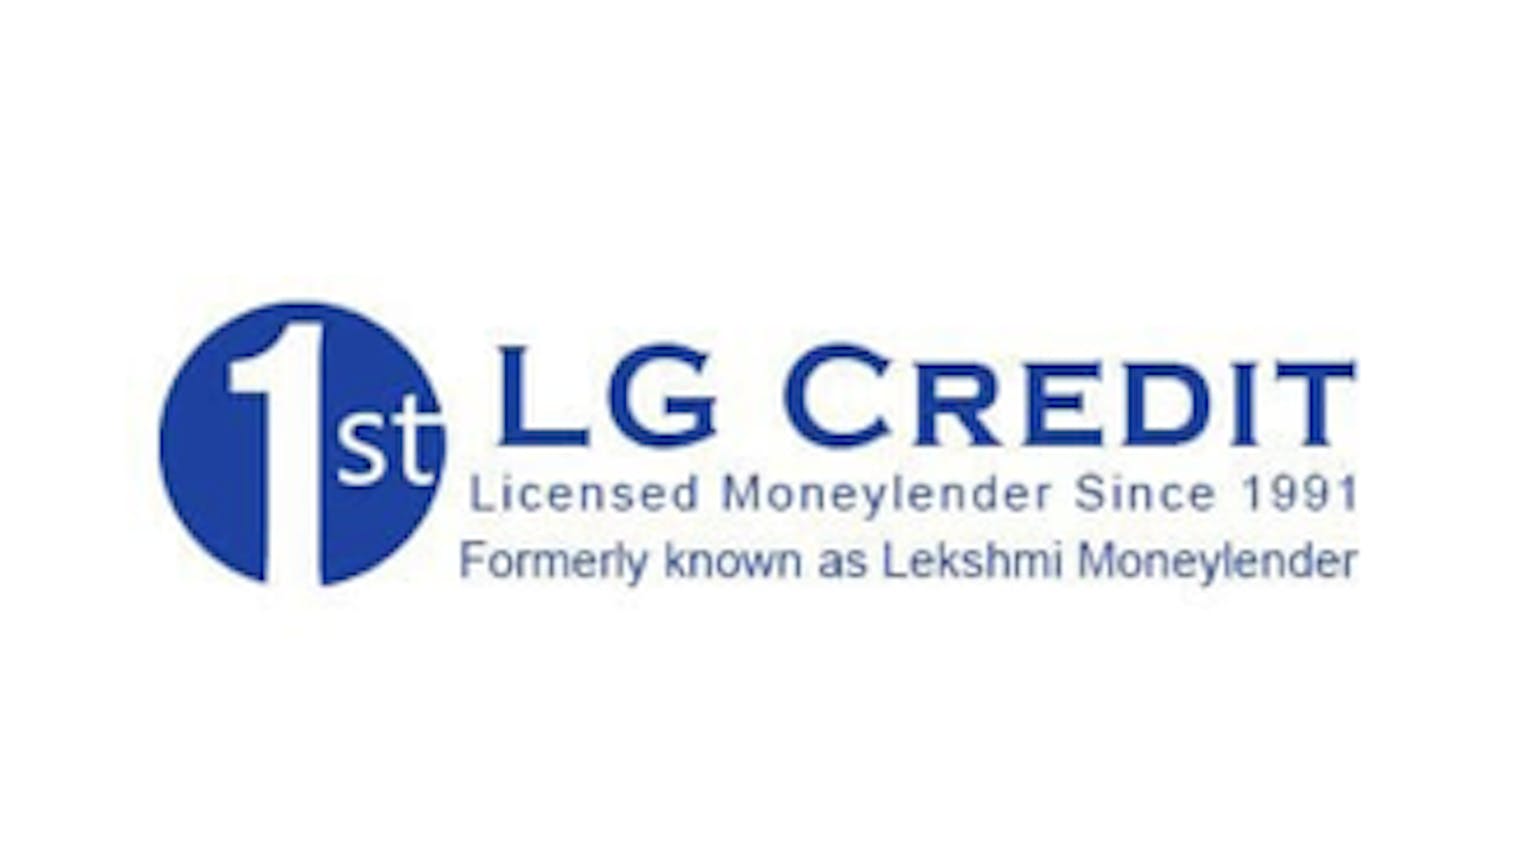 1st LG Credit